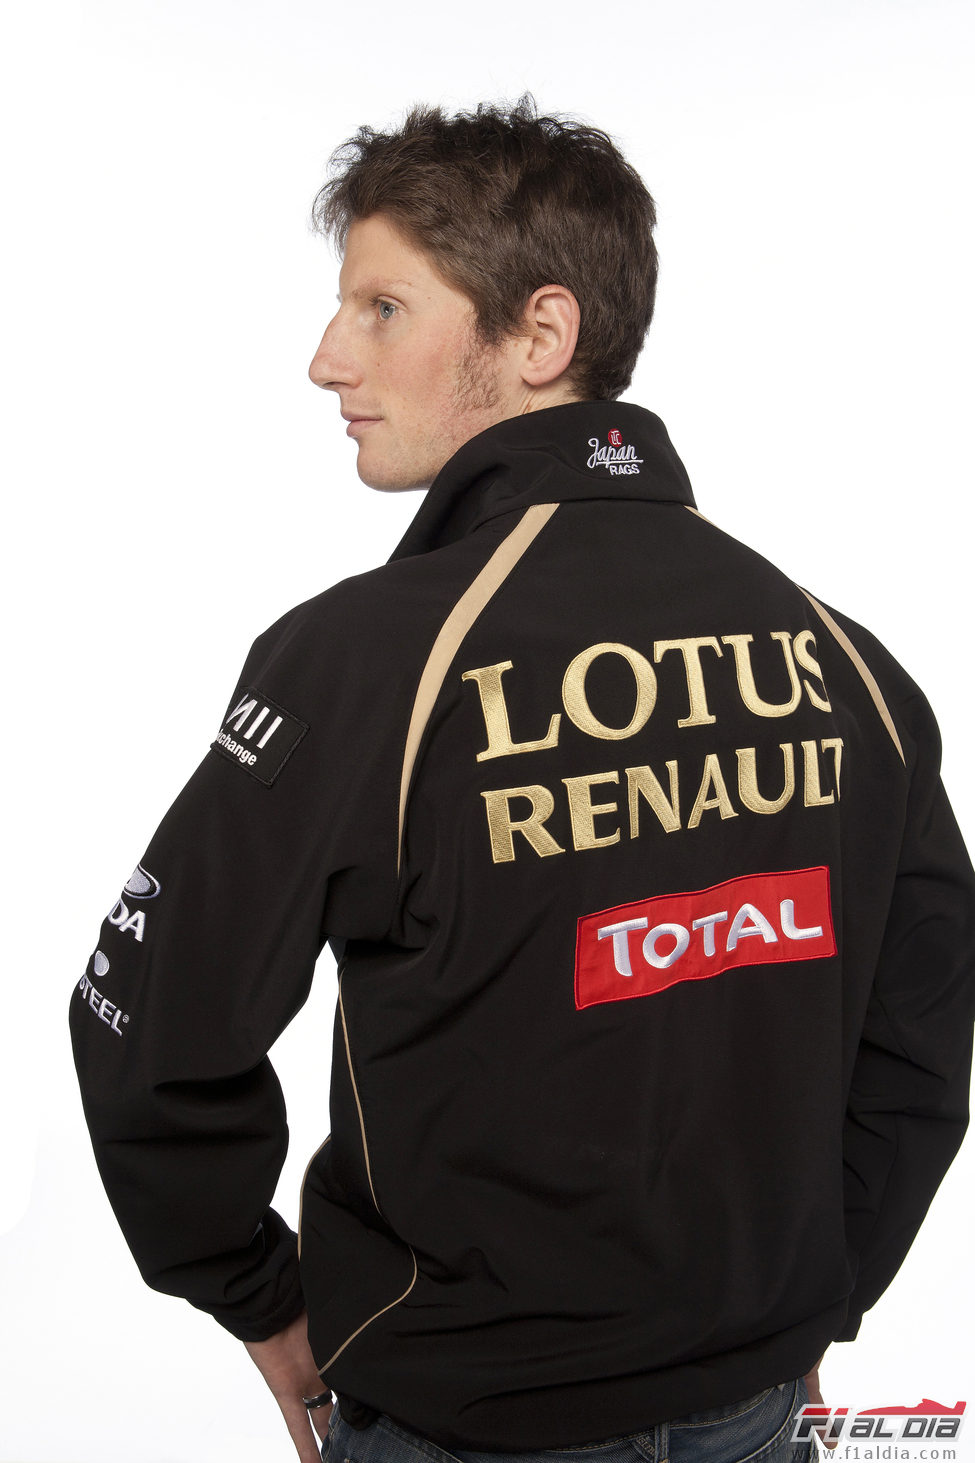 Romain Grosjean llega a Lotus Renault GP de la mano de Total